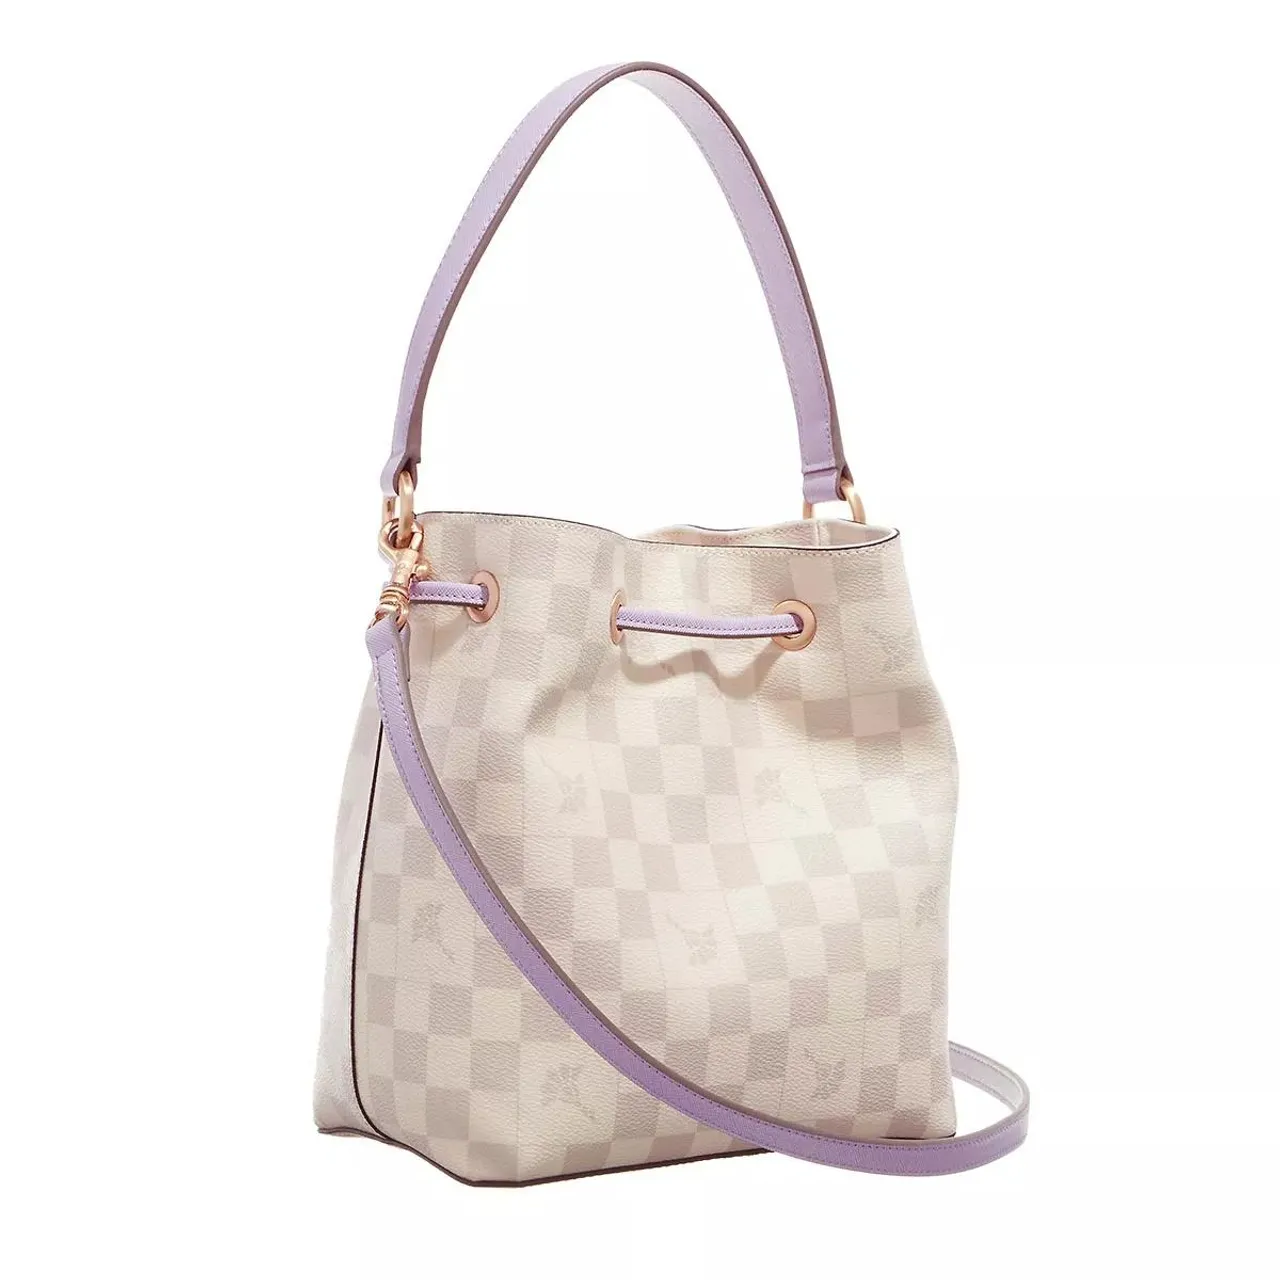 Handtaschen lila/pink Farbe: flieder/lila -